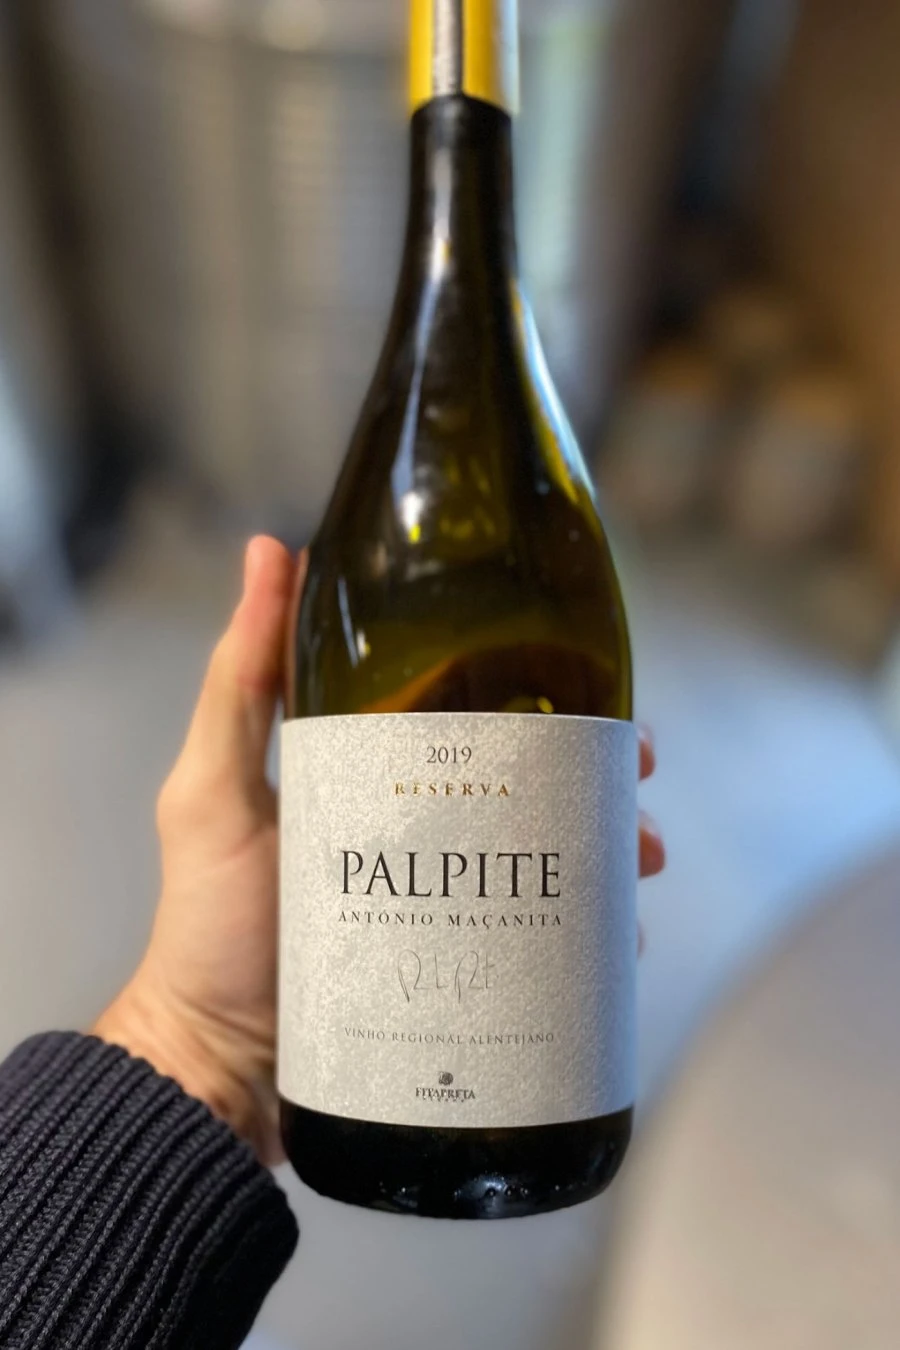 Palpite White “Reserva” - Fitapreta - Portogallo - Vino bianco